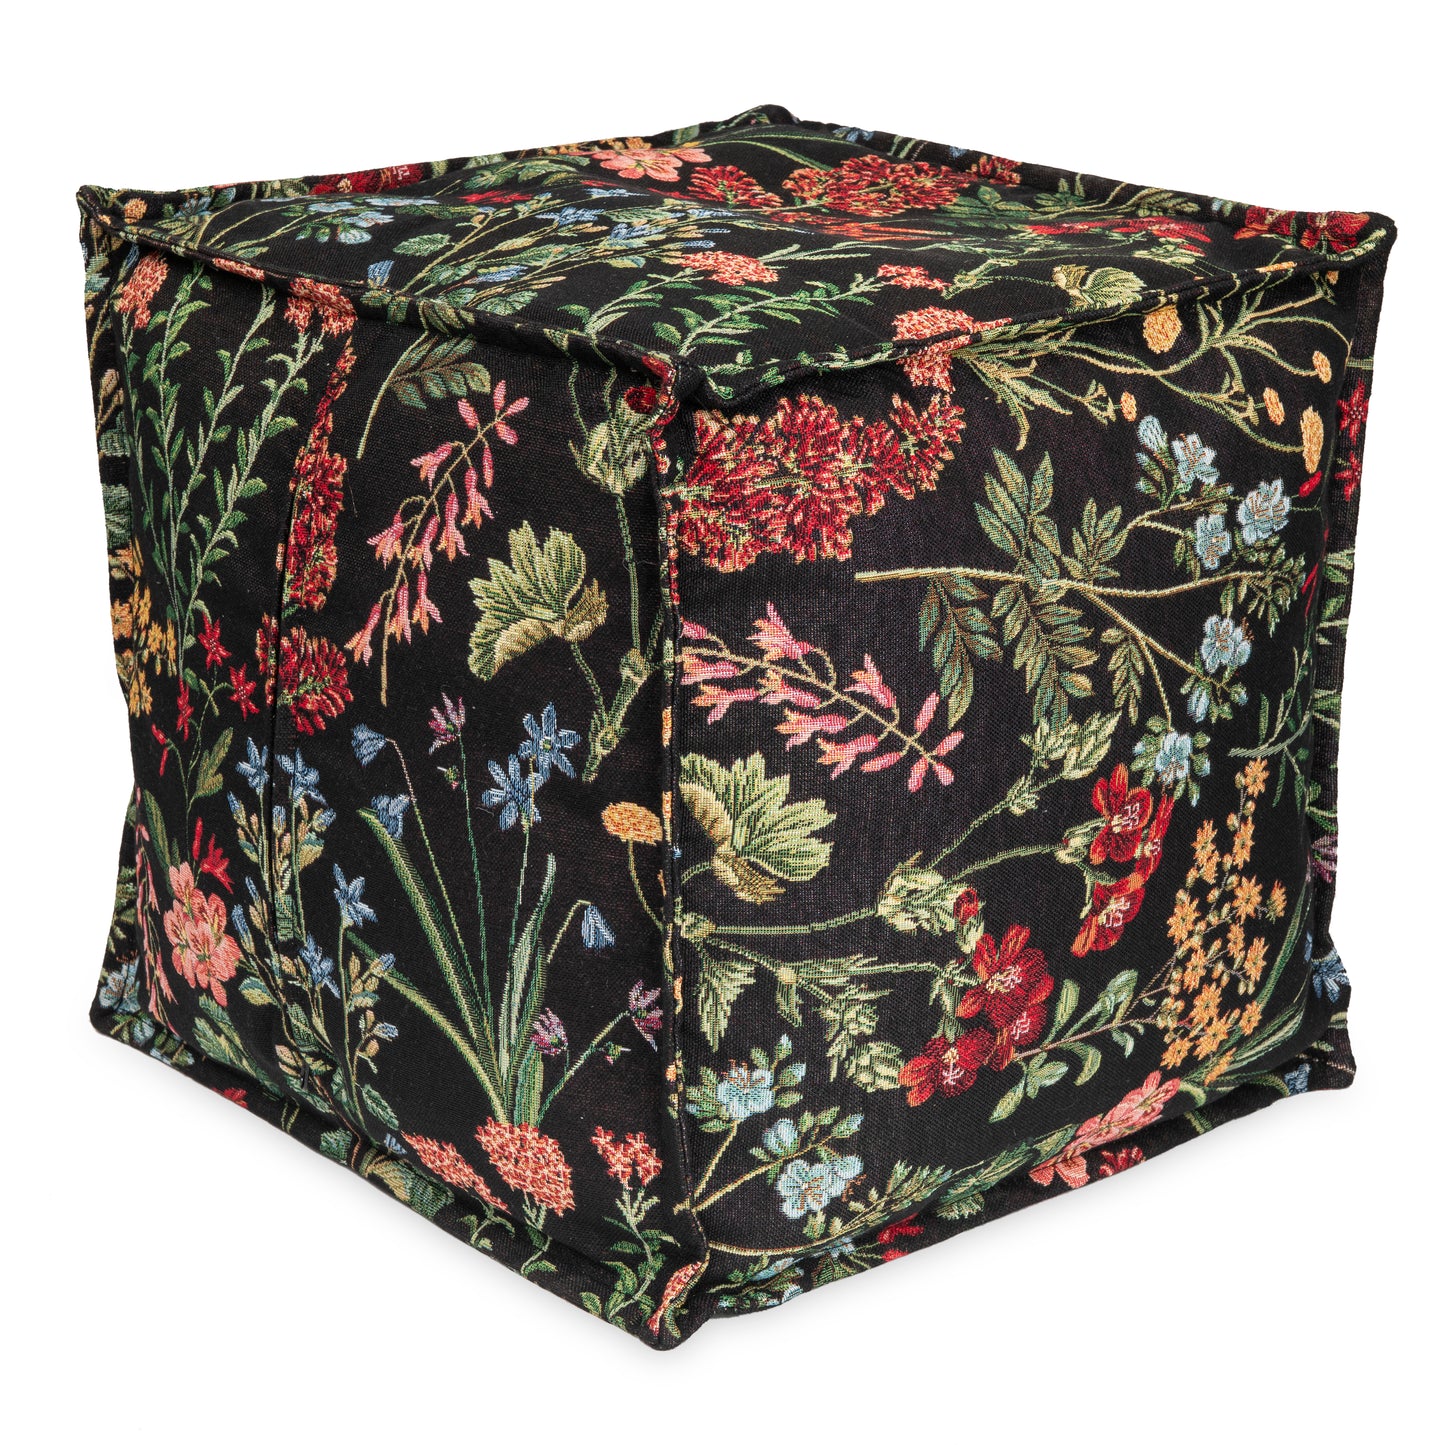 Poltrona Beanbag pouf realizzato in un tessuto fantasia floreale tema prato primaverile Pouf con imbottitura in EPS con comodo poggiapiedi